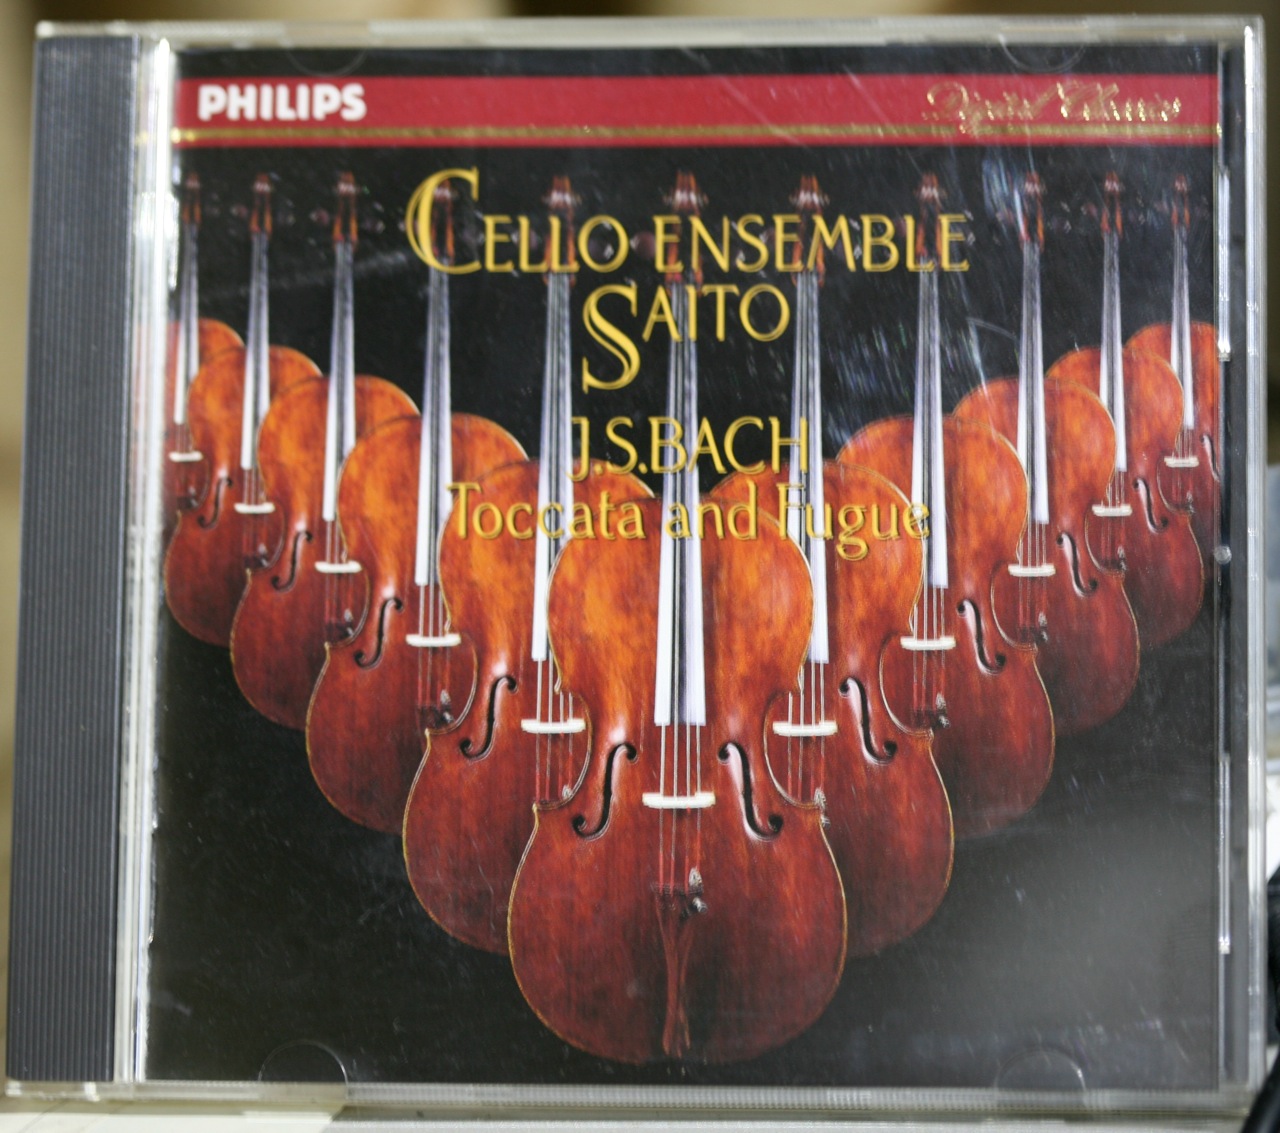 Cello Ensemble Saito: J.S.Bach Toccata and Fugue | 音の散歩道